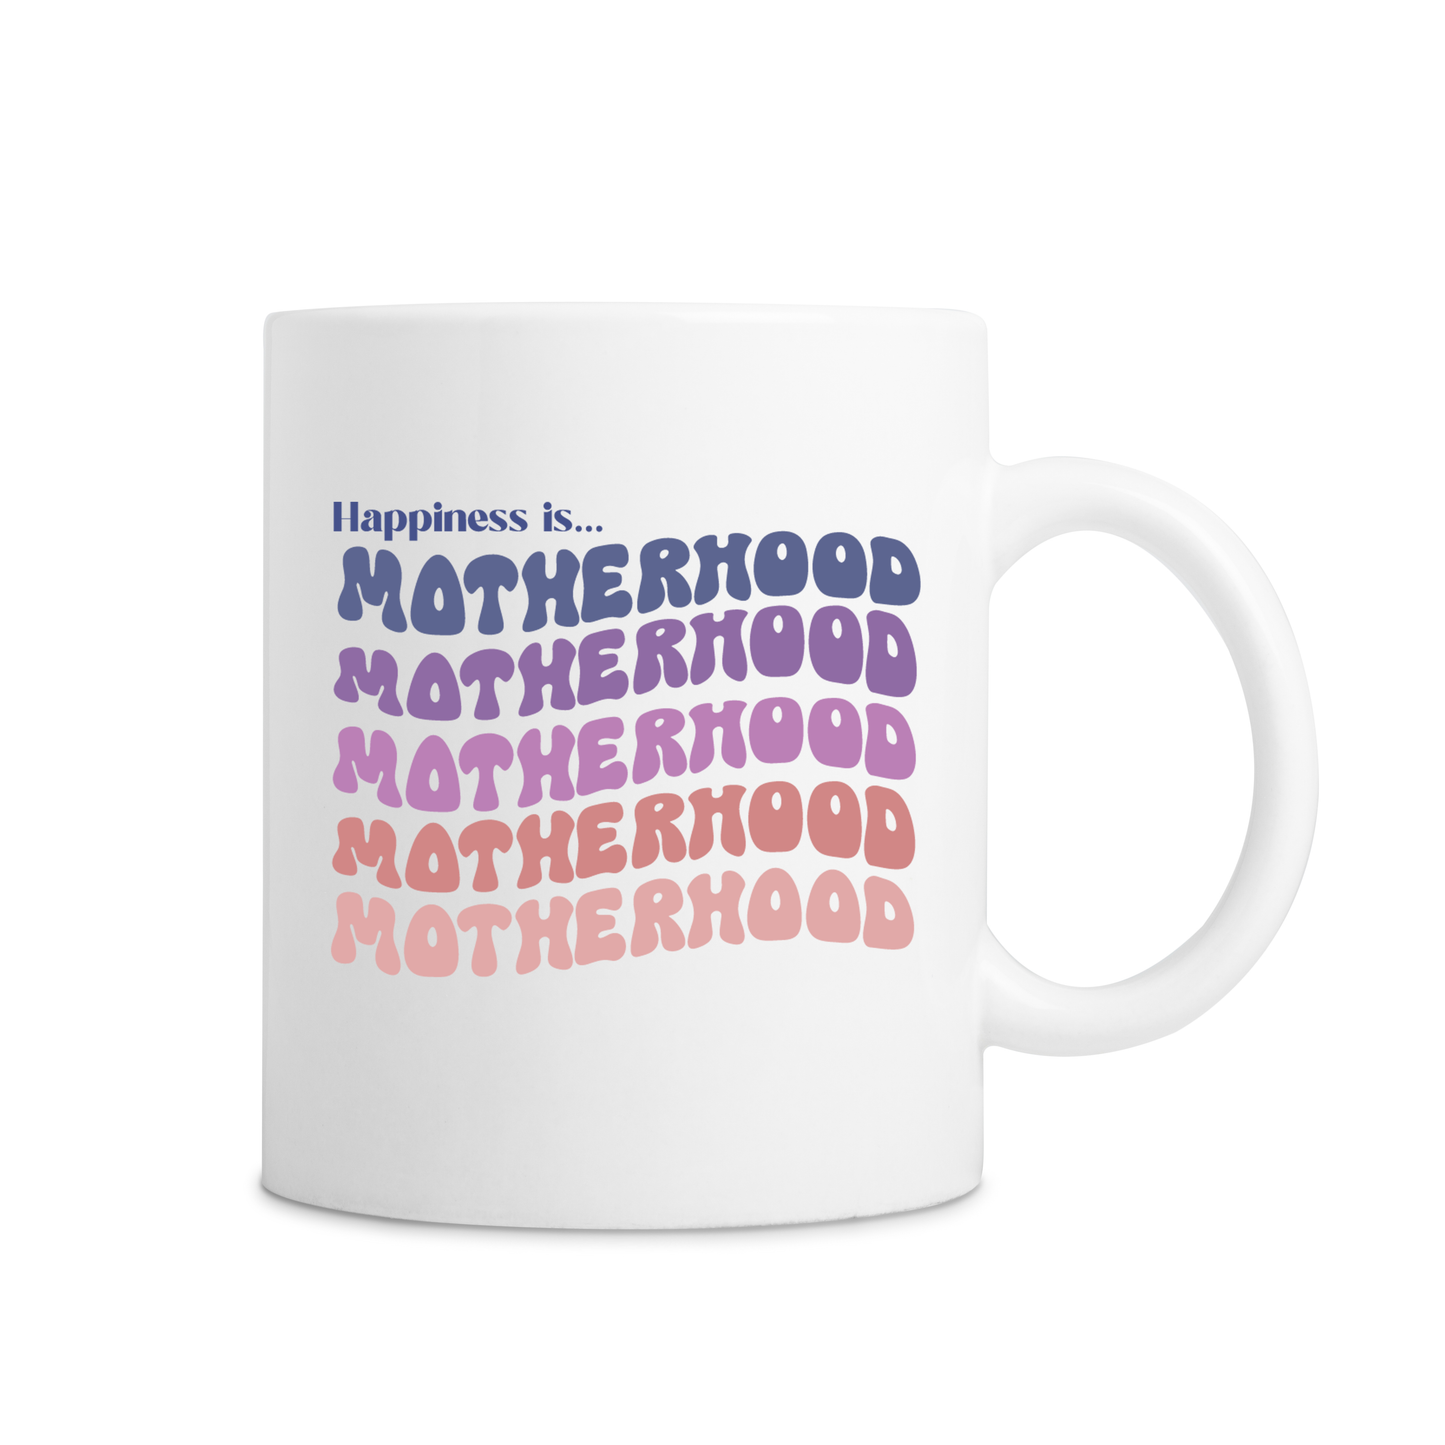 Happiness Is Motherhood Mug - White